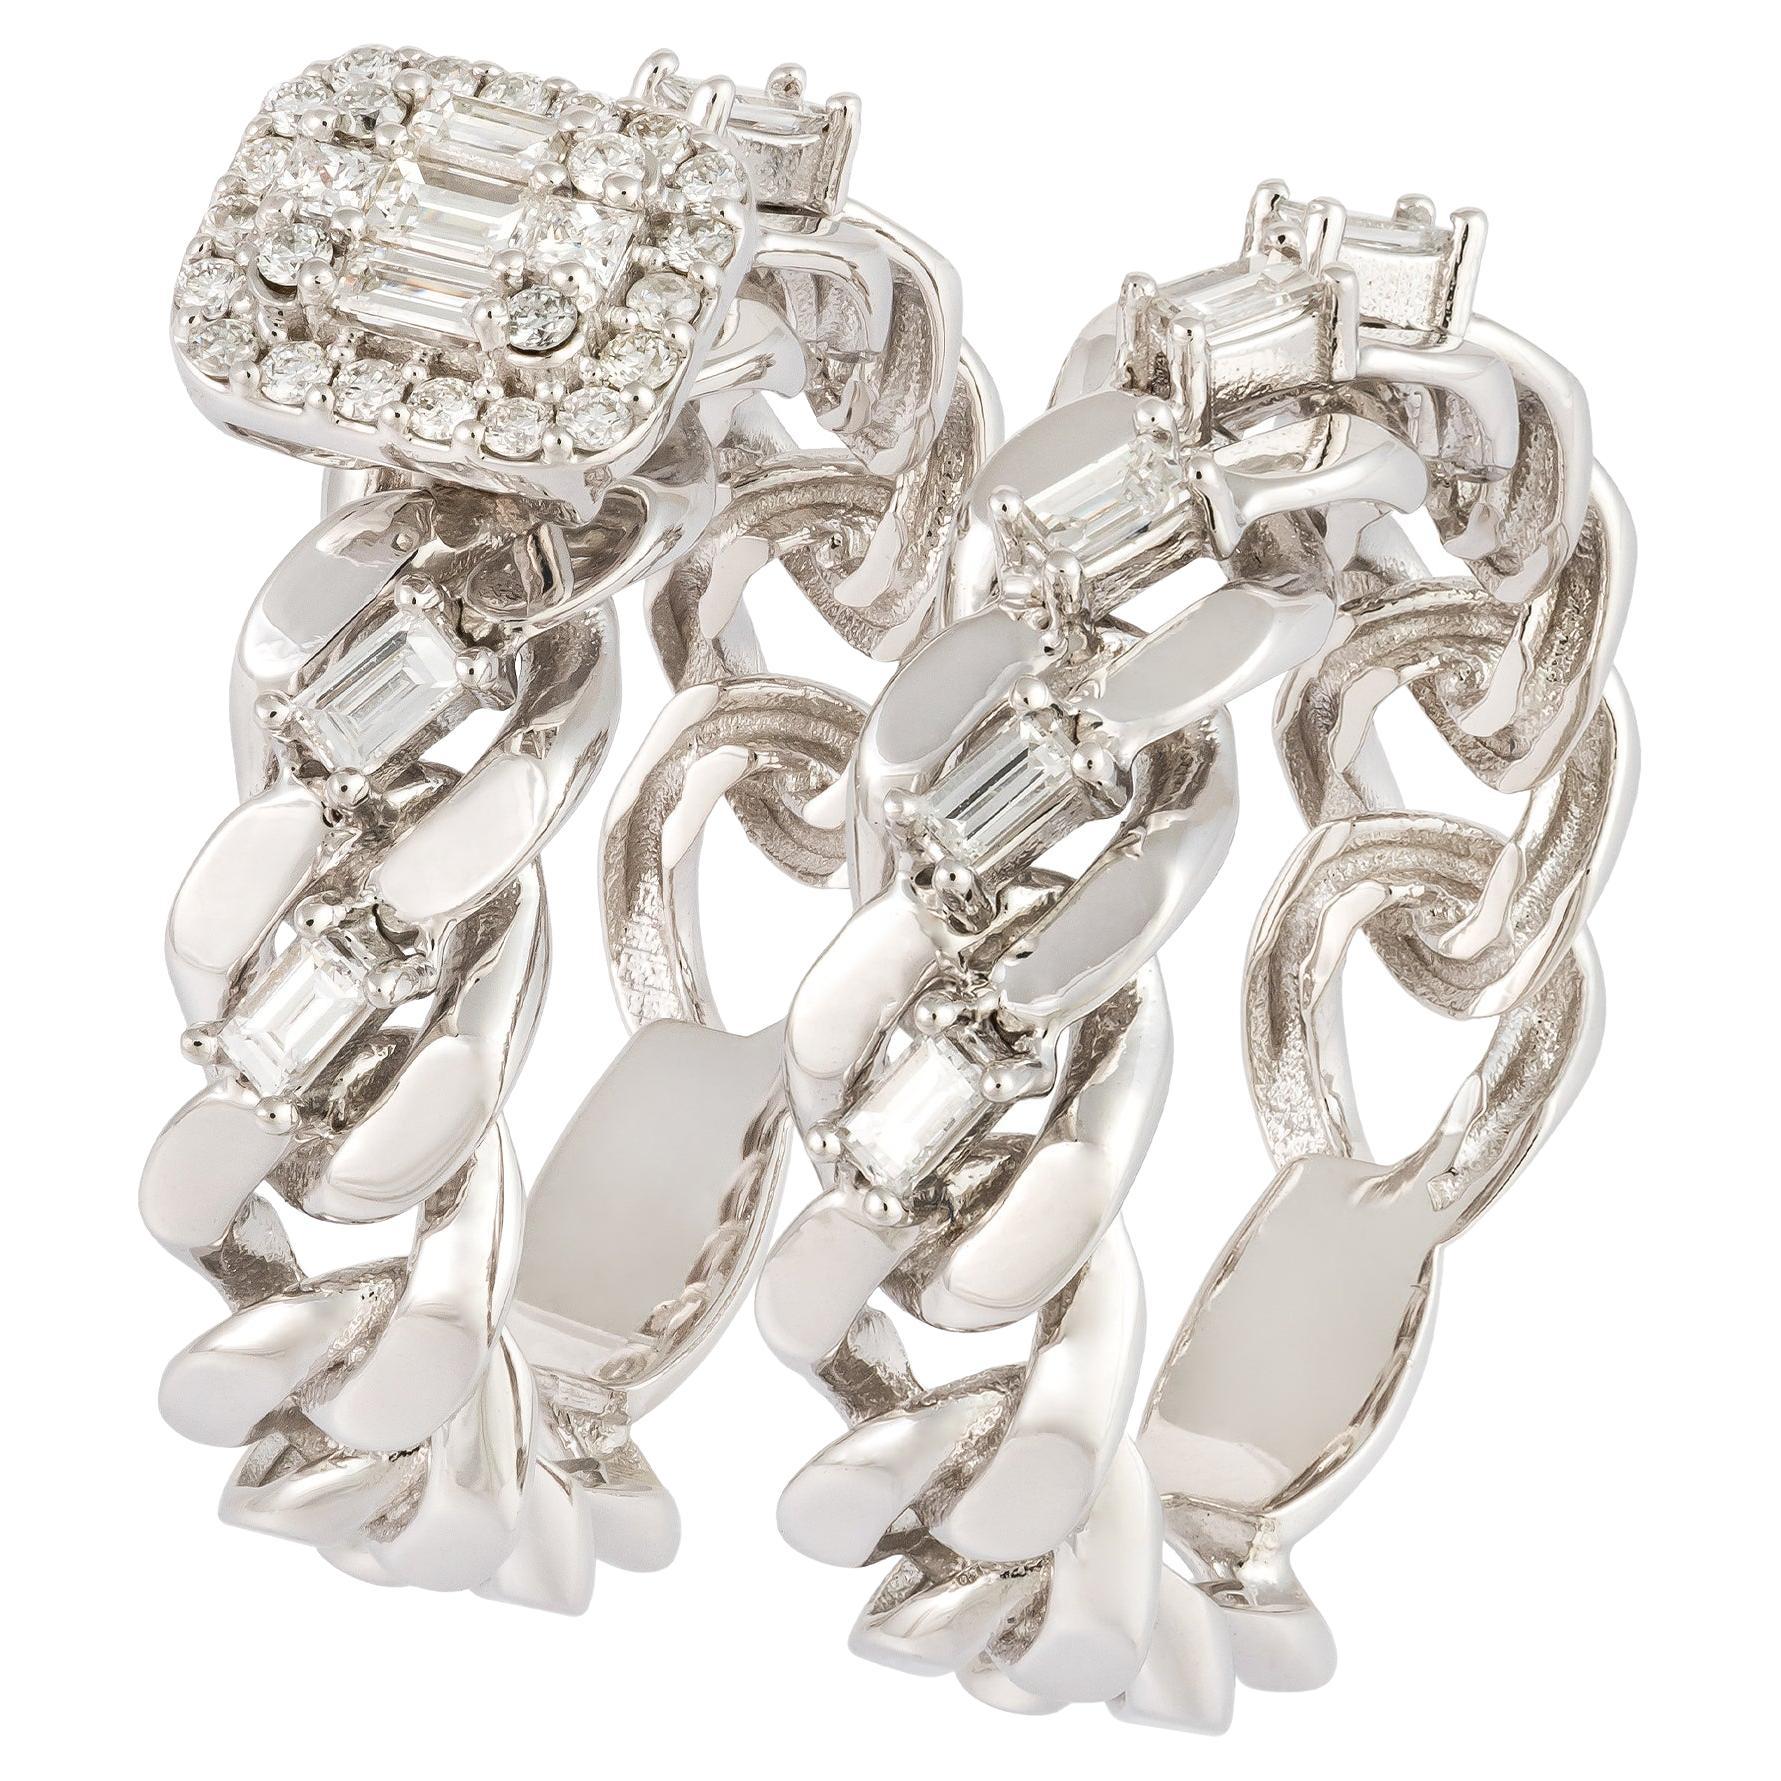 For Sale:  Breathtaking White 18K Gold White Diamond Ring For Her